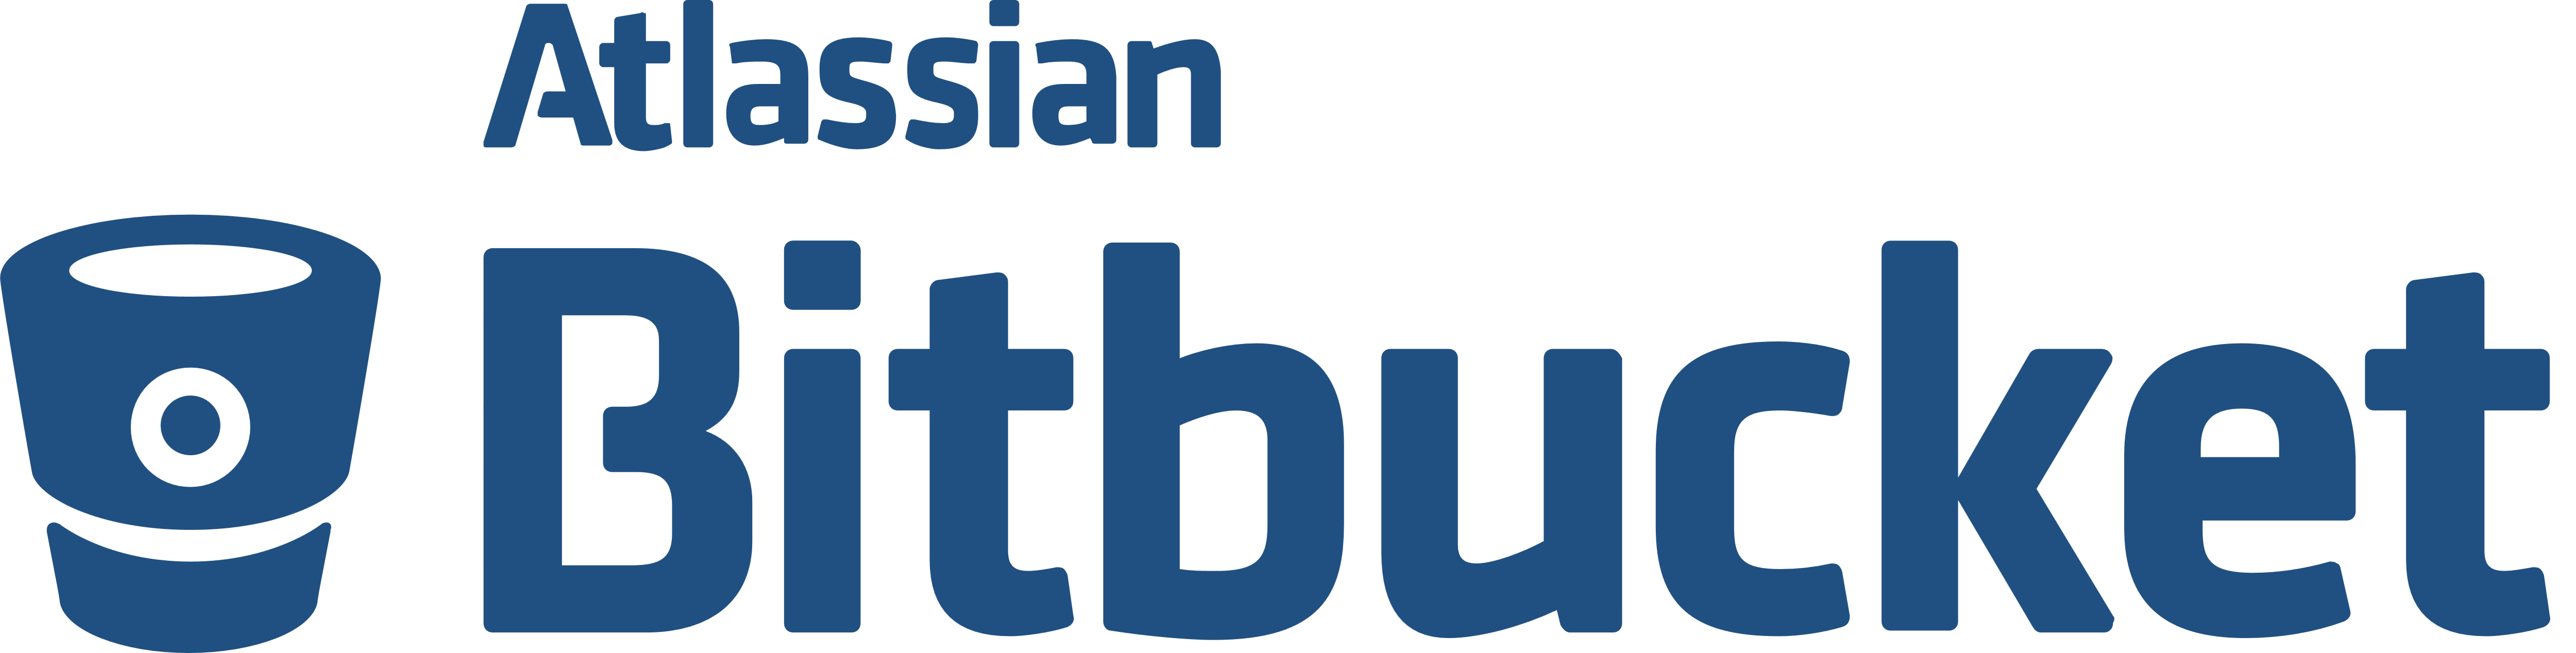 Bitbucket Logo - Bitbucket